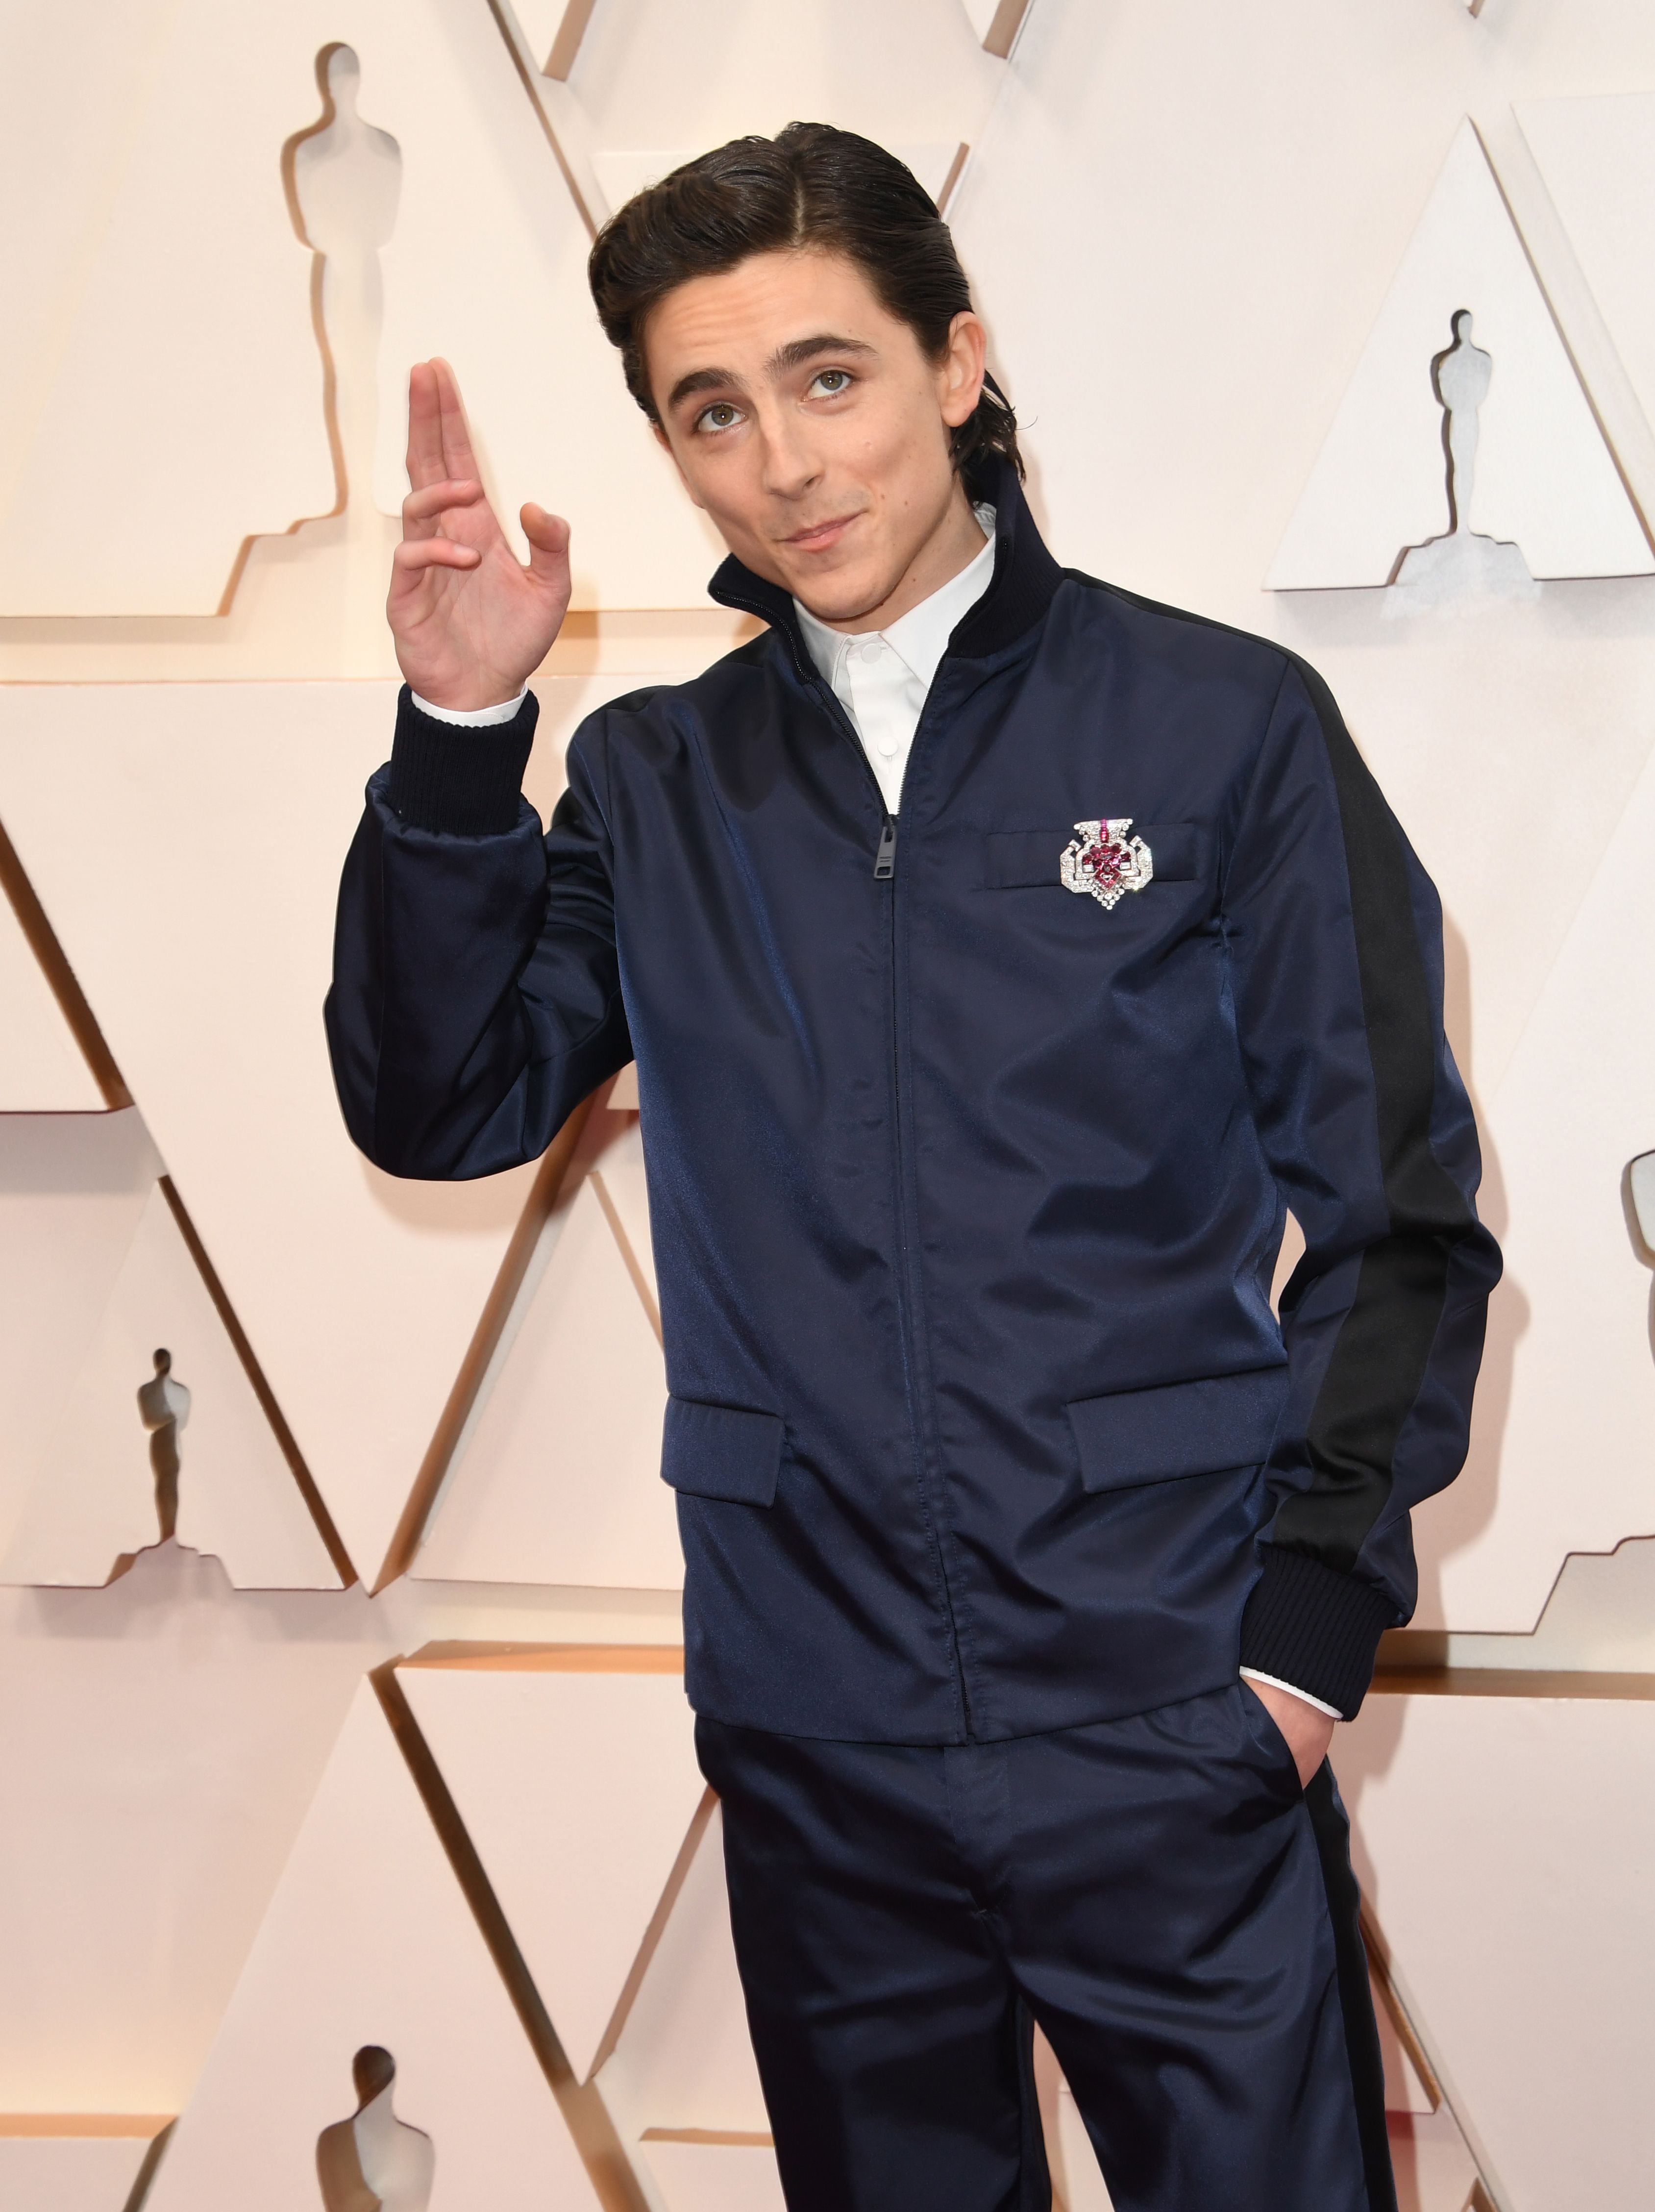 Timothée Chalamet's Oscars 2020 red carpet outfit divides fans